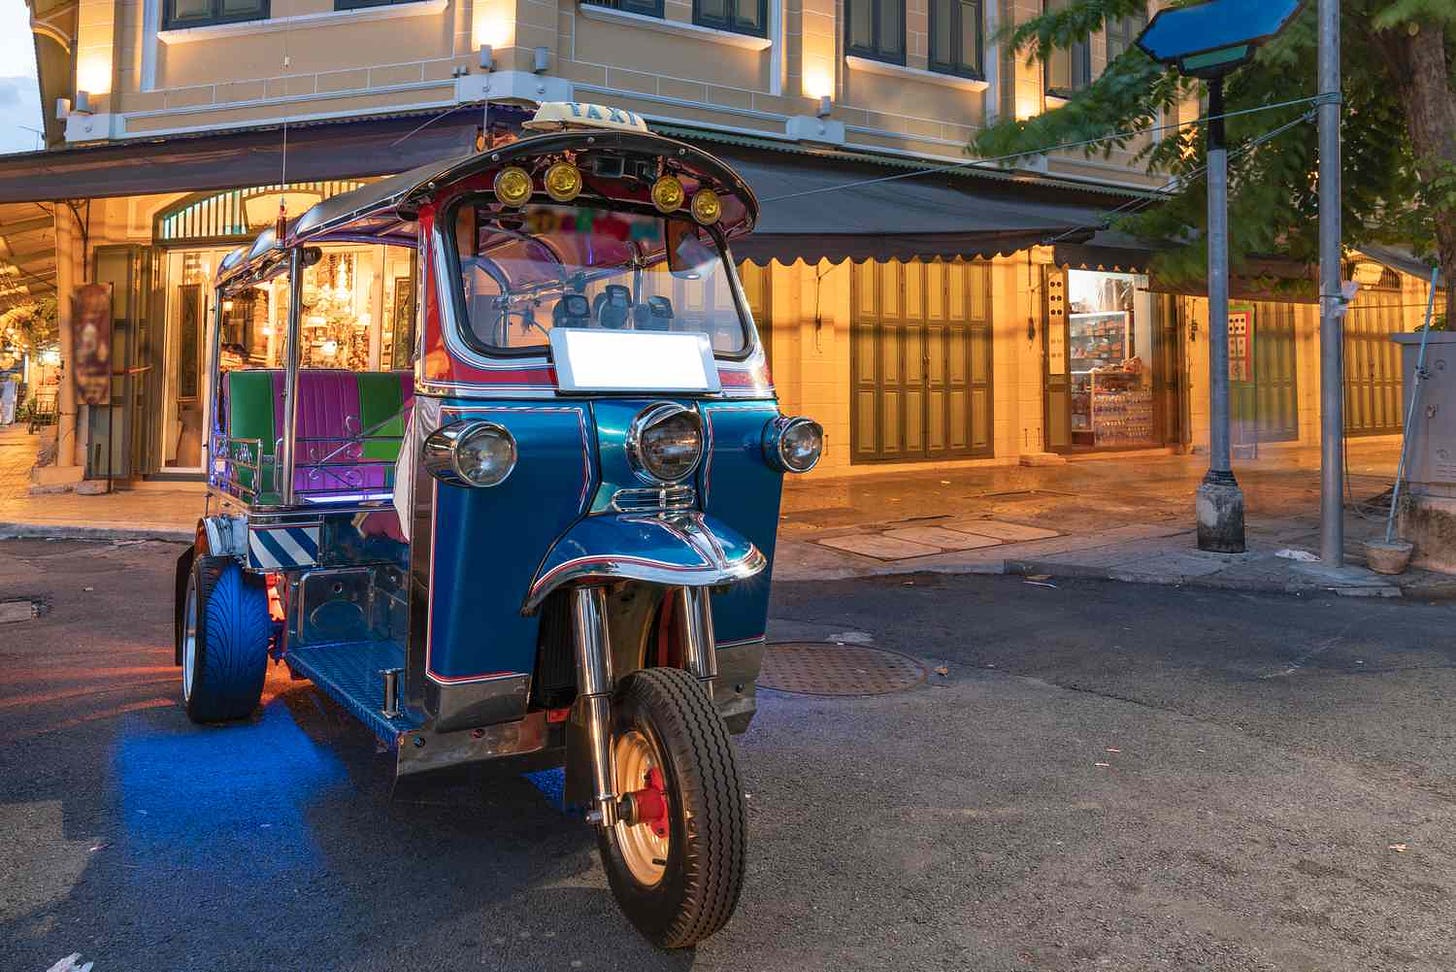 Tuk-Tuk: How to Use the Auto Rickshaws in Asia